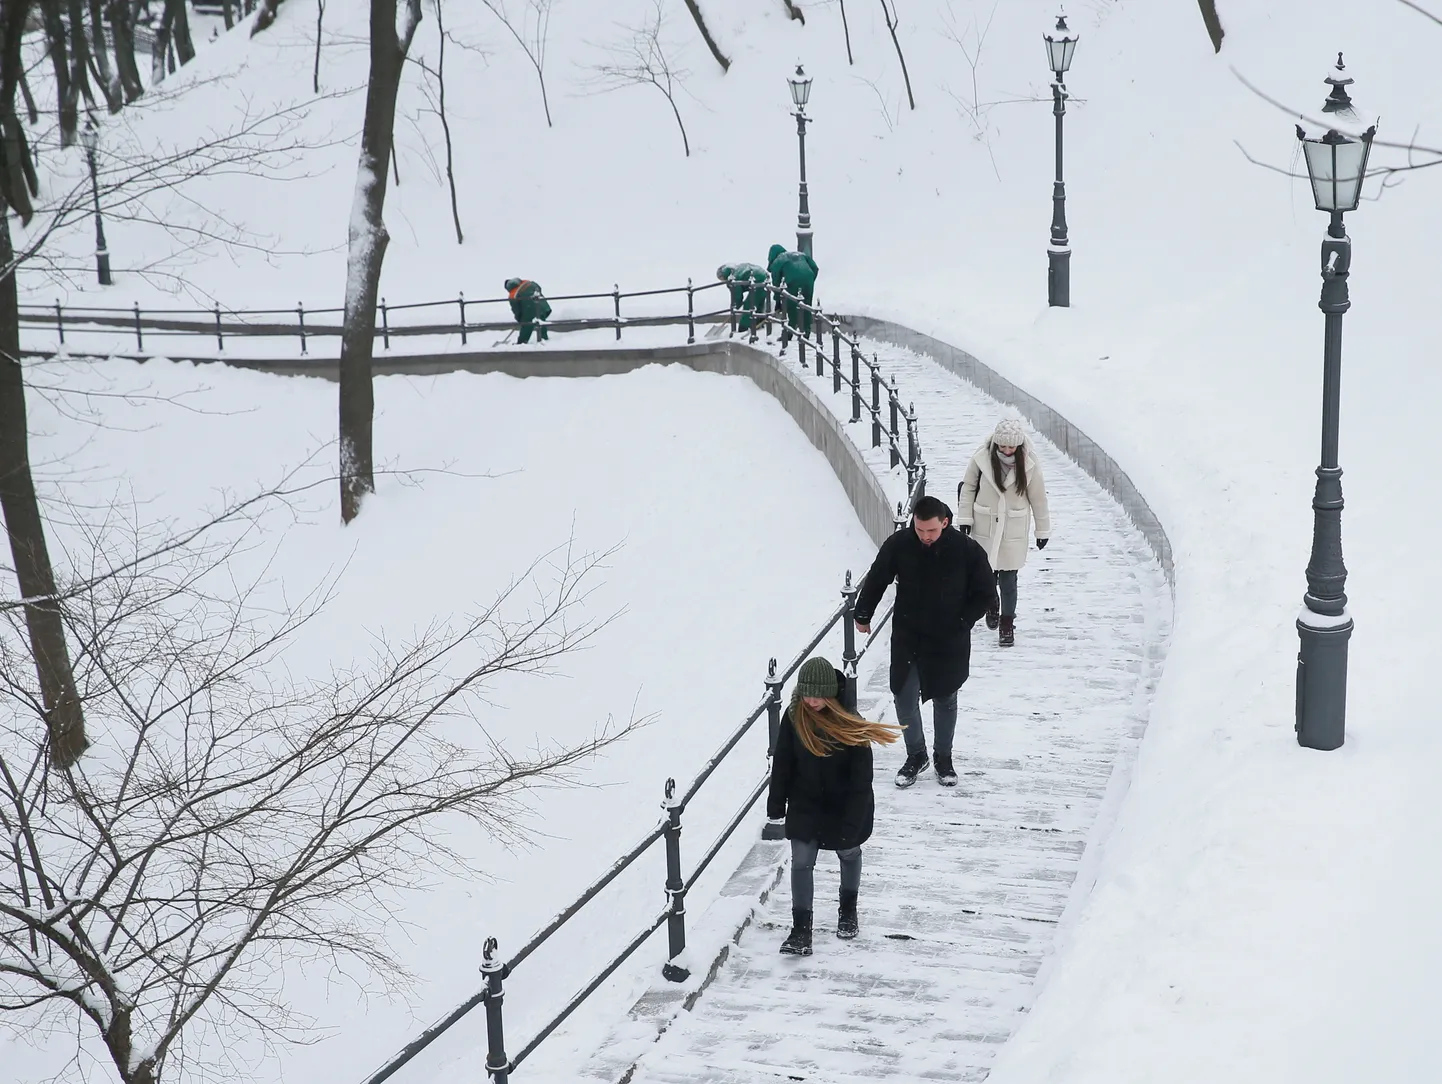 Inimesed lumises Kiievis üle-eelmisel talvel. Eeloleval talvel peavad ukrainlased saama hakkama jahedates kodudes.